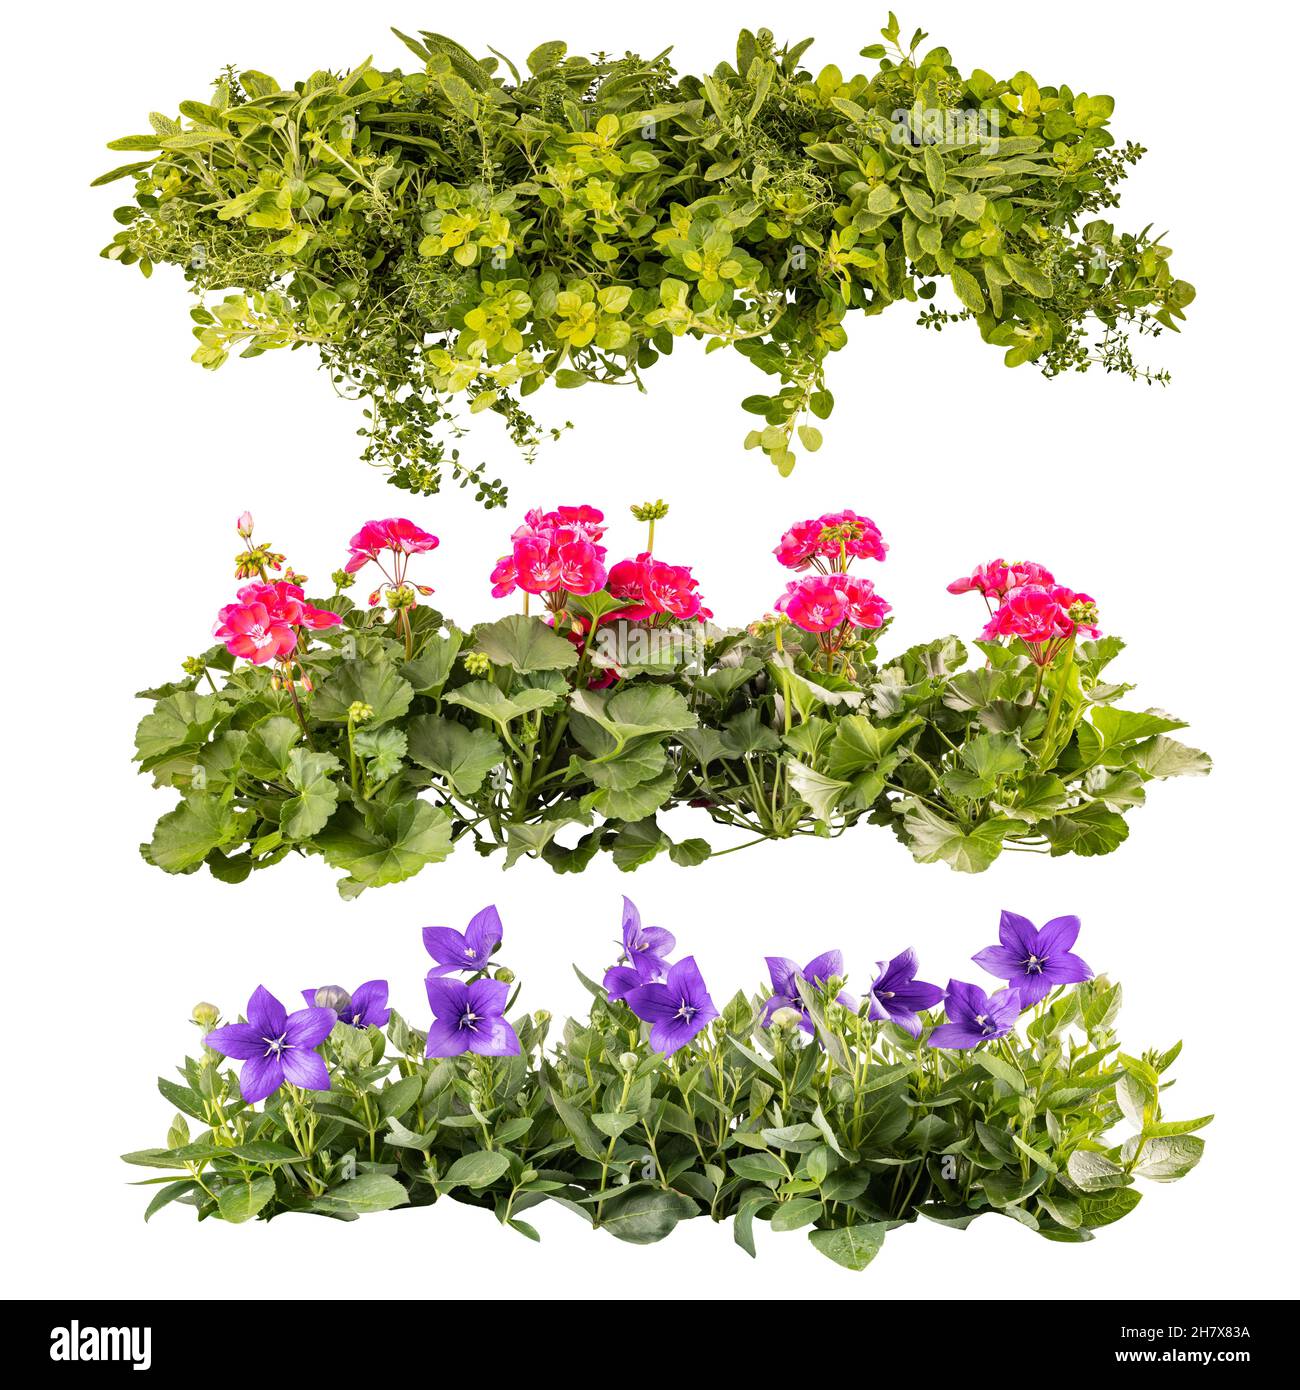 Collage de magnifiques fleurs de balcon d'été en rangées, isolées sur fond blanc Banque D'Images